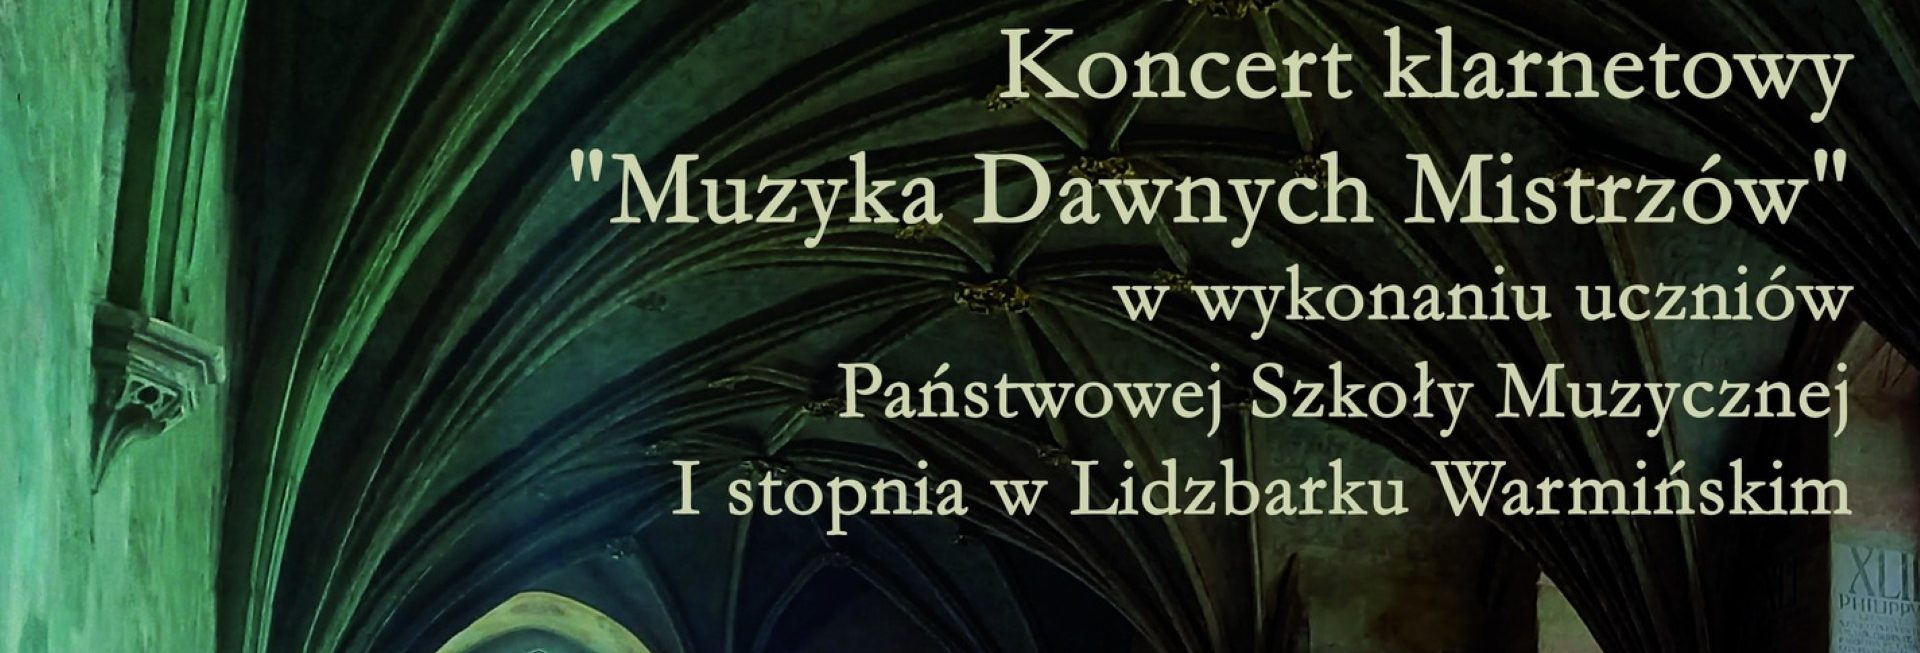 Plakat zapraszający w czwartek 15 czerwca 2023 r. do Lidzbarka Warmińskiego na koncert klarnetowy "Muzyka Dawnych Mistrzów" Zamek Lidzbark Warmiński 2023.